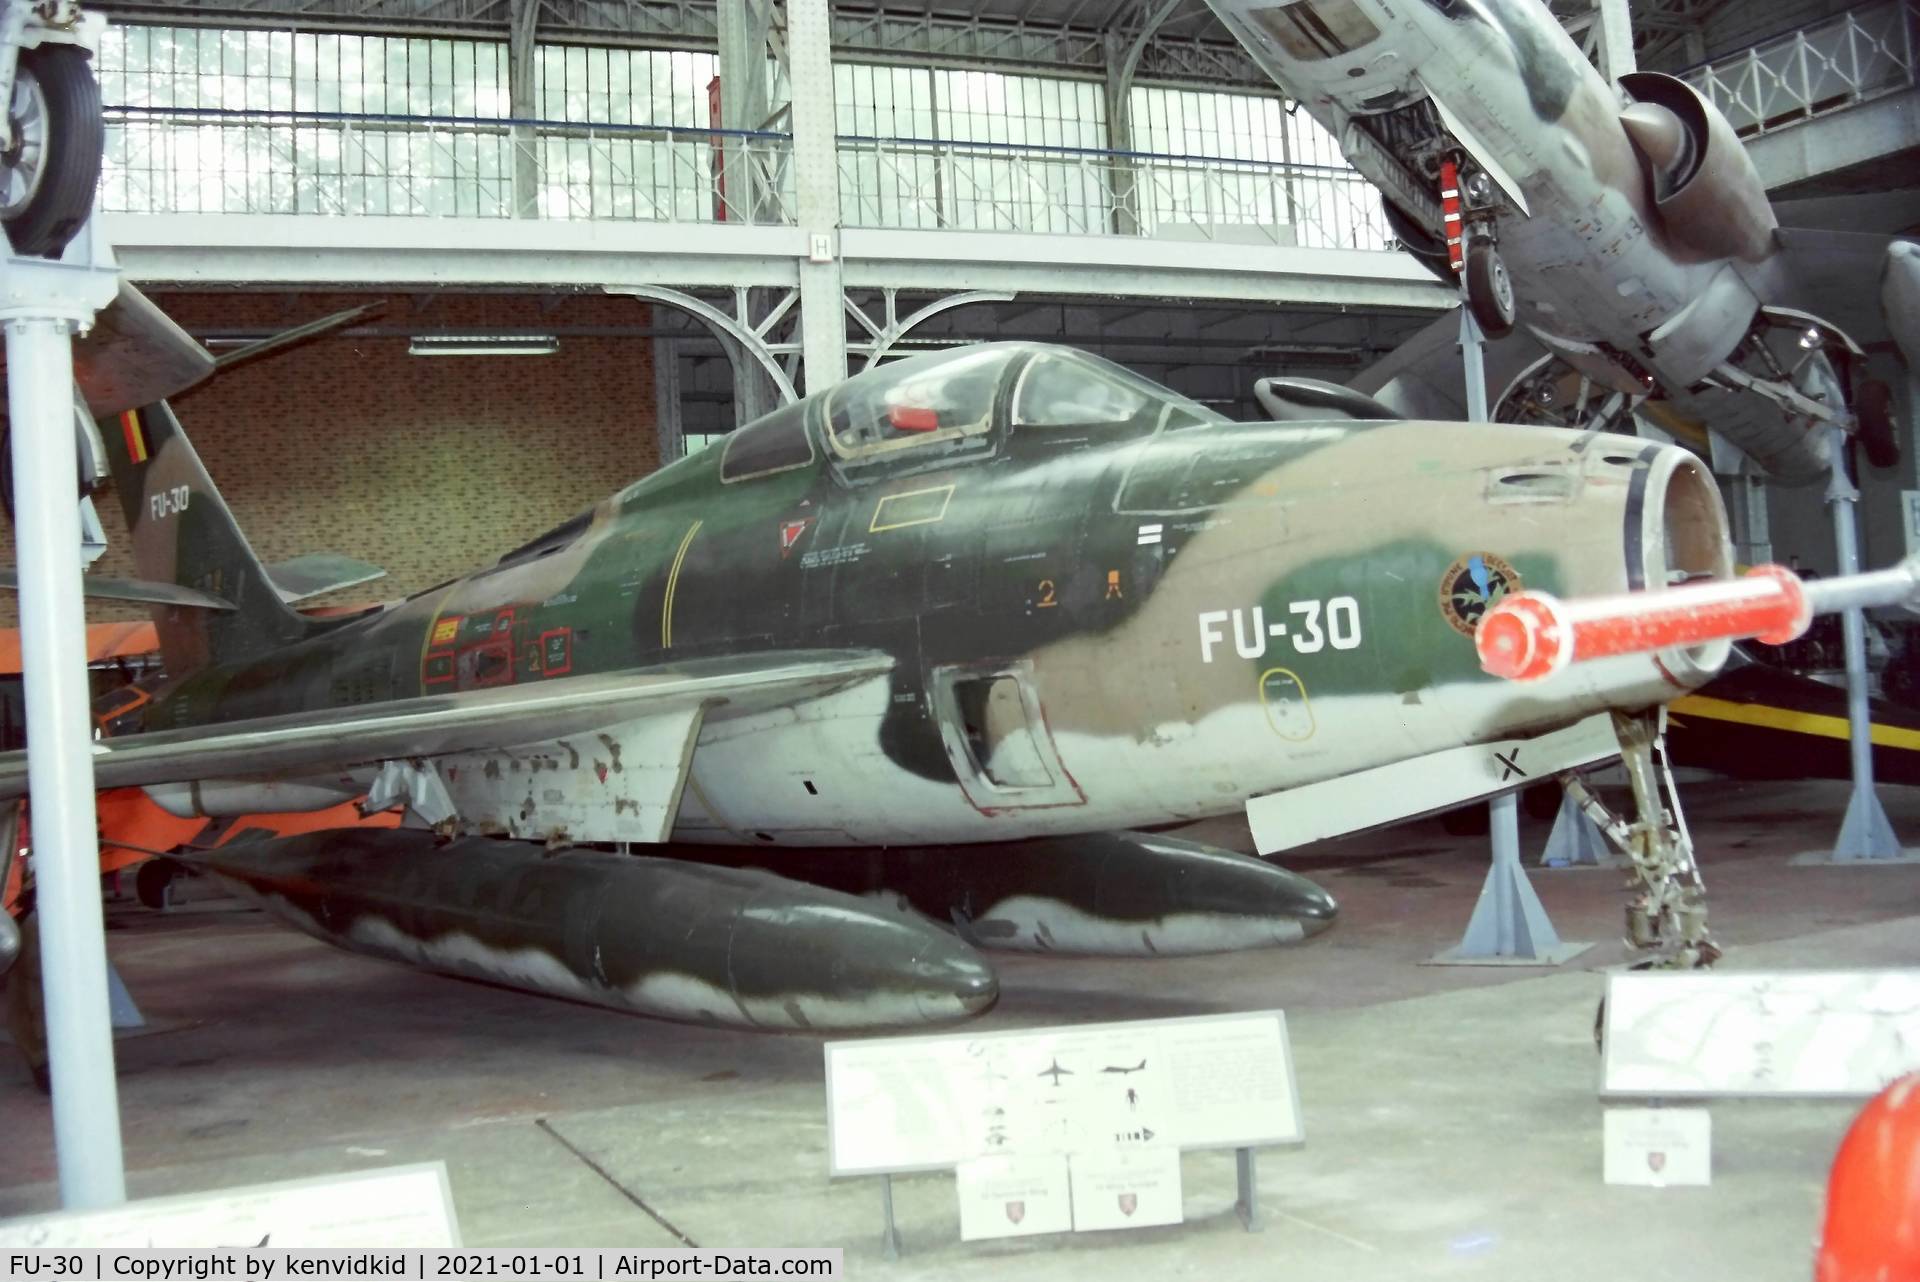 FU-30, 1953 Republic F-84F Thunderstreak C/N Not found (53-6806/FU-30/FU-15, At the Brussels Aviation Museum in 2000.